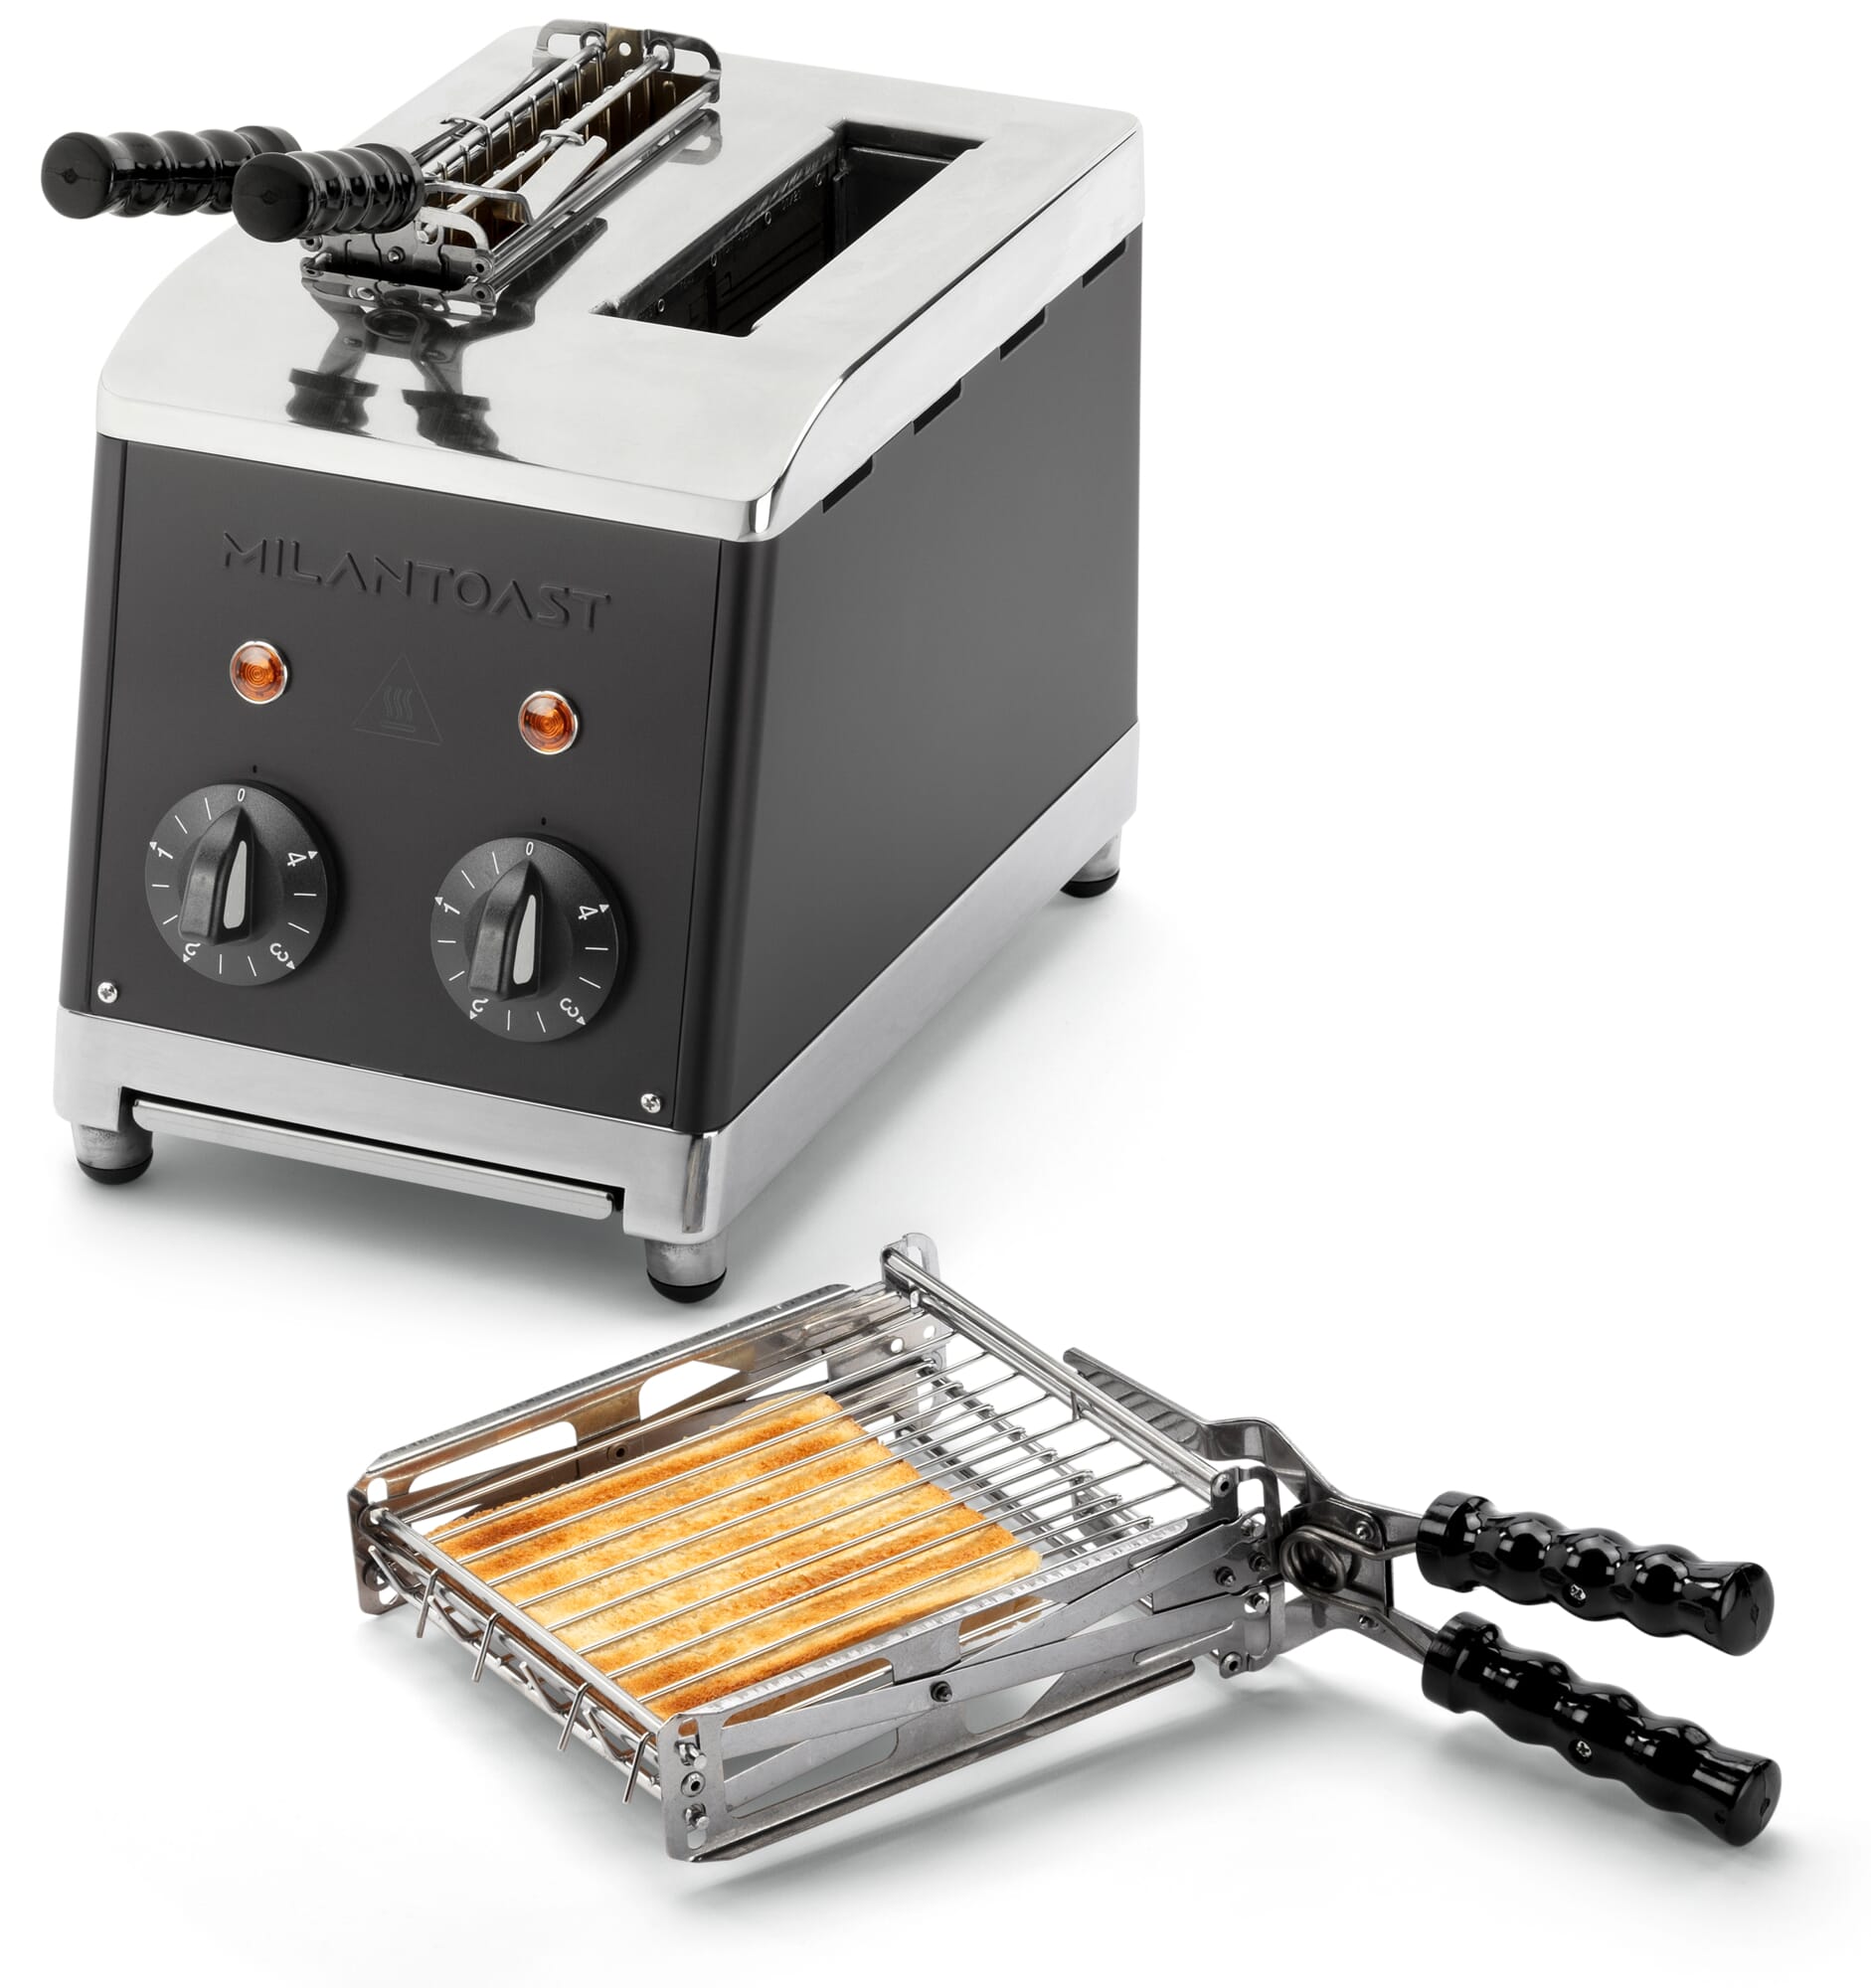 https://assets.manufactum.de/p/206/206461/206461_01.jpg/classic-sandwich-toaster-tongs.jpg